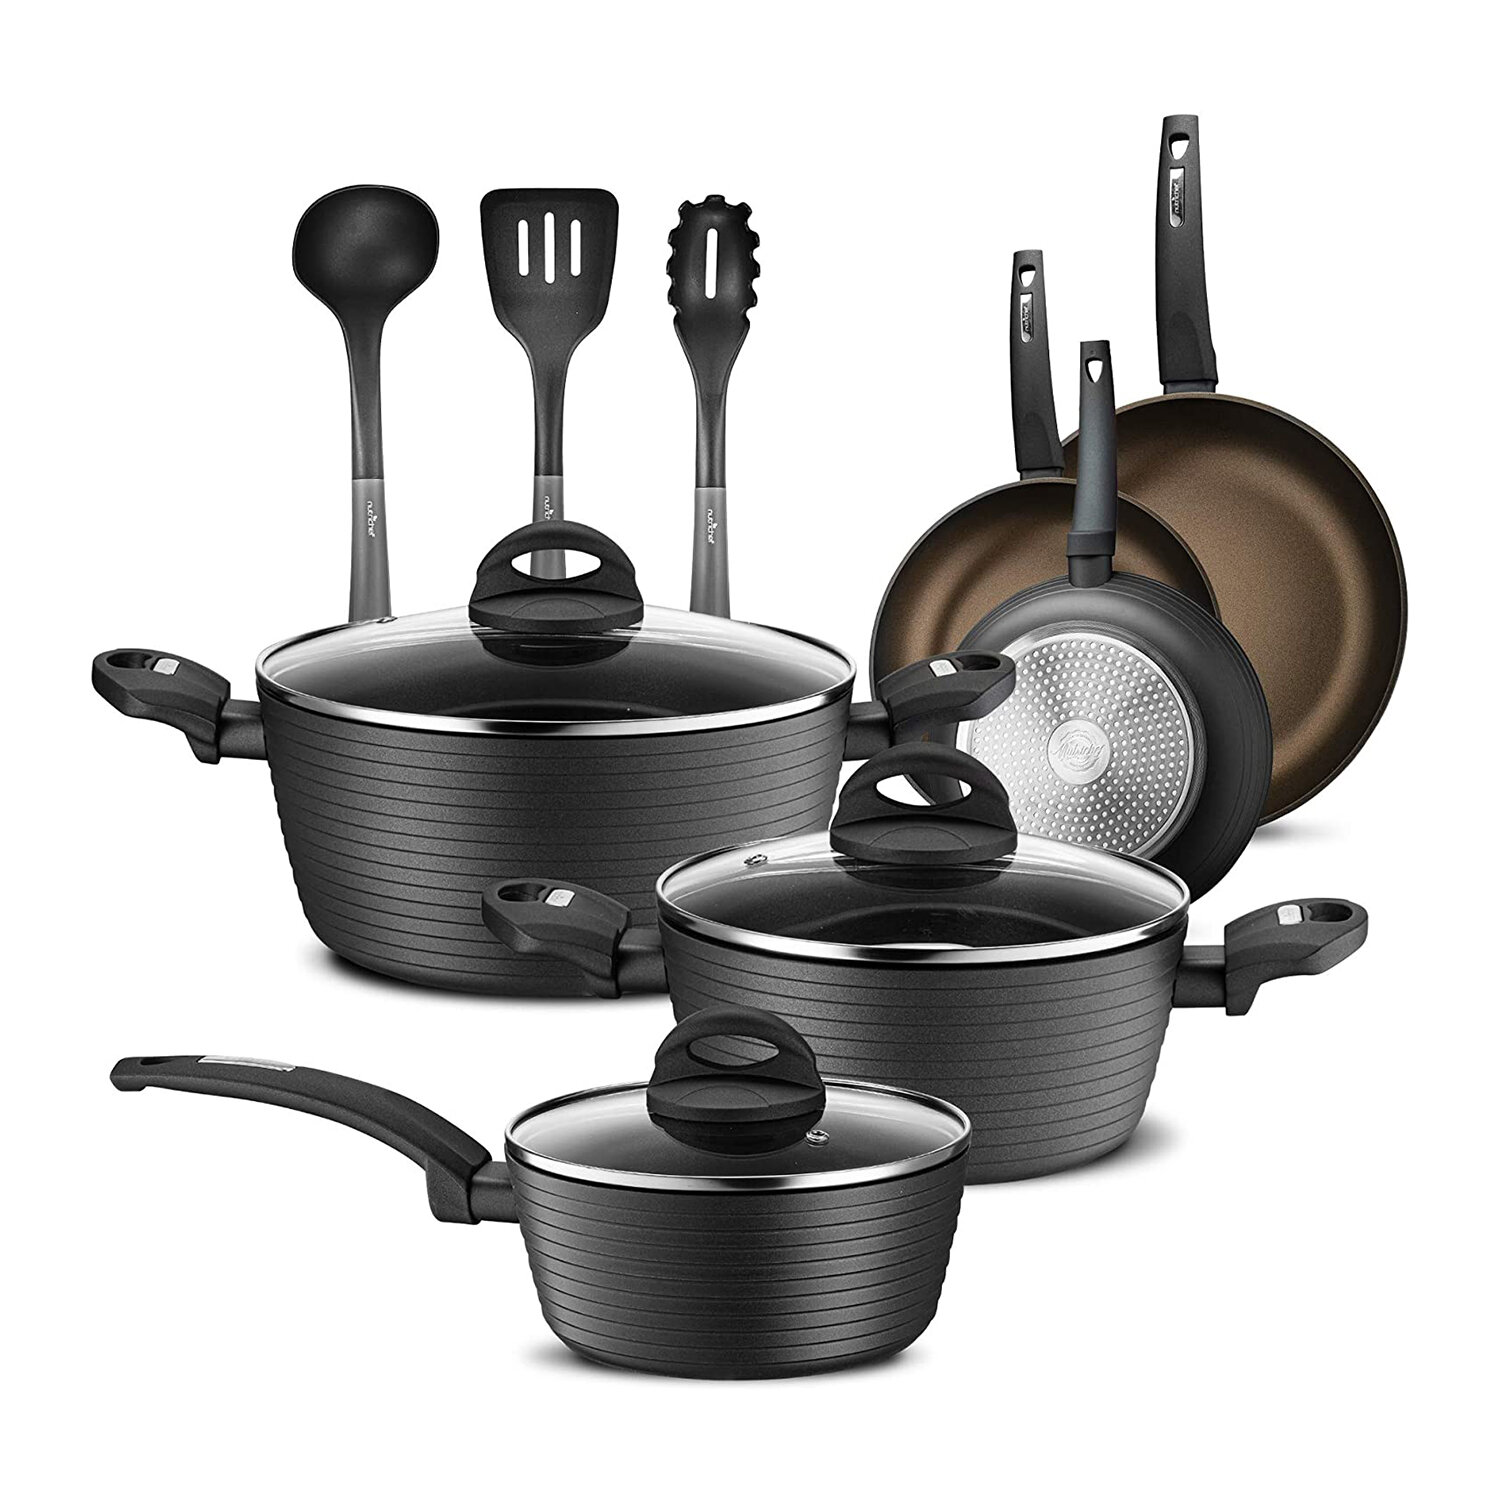 https://assets.wfcdn.com/im/30937499/compr-r85/1919/191993065/12-piece-non-stick-enameled-cast-iron-cookware-set.jpg